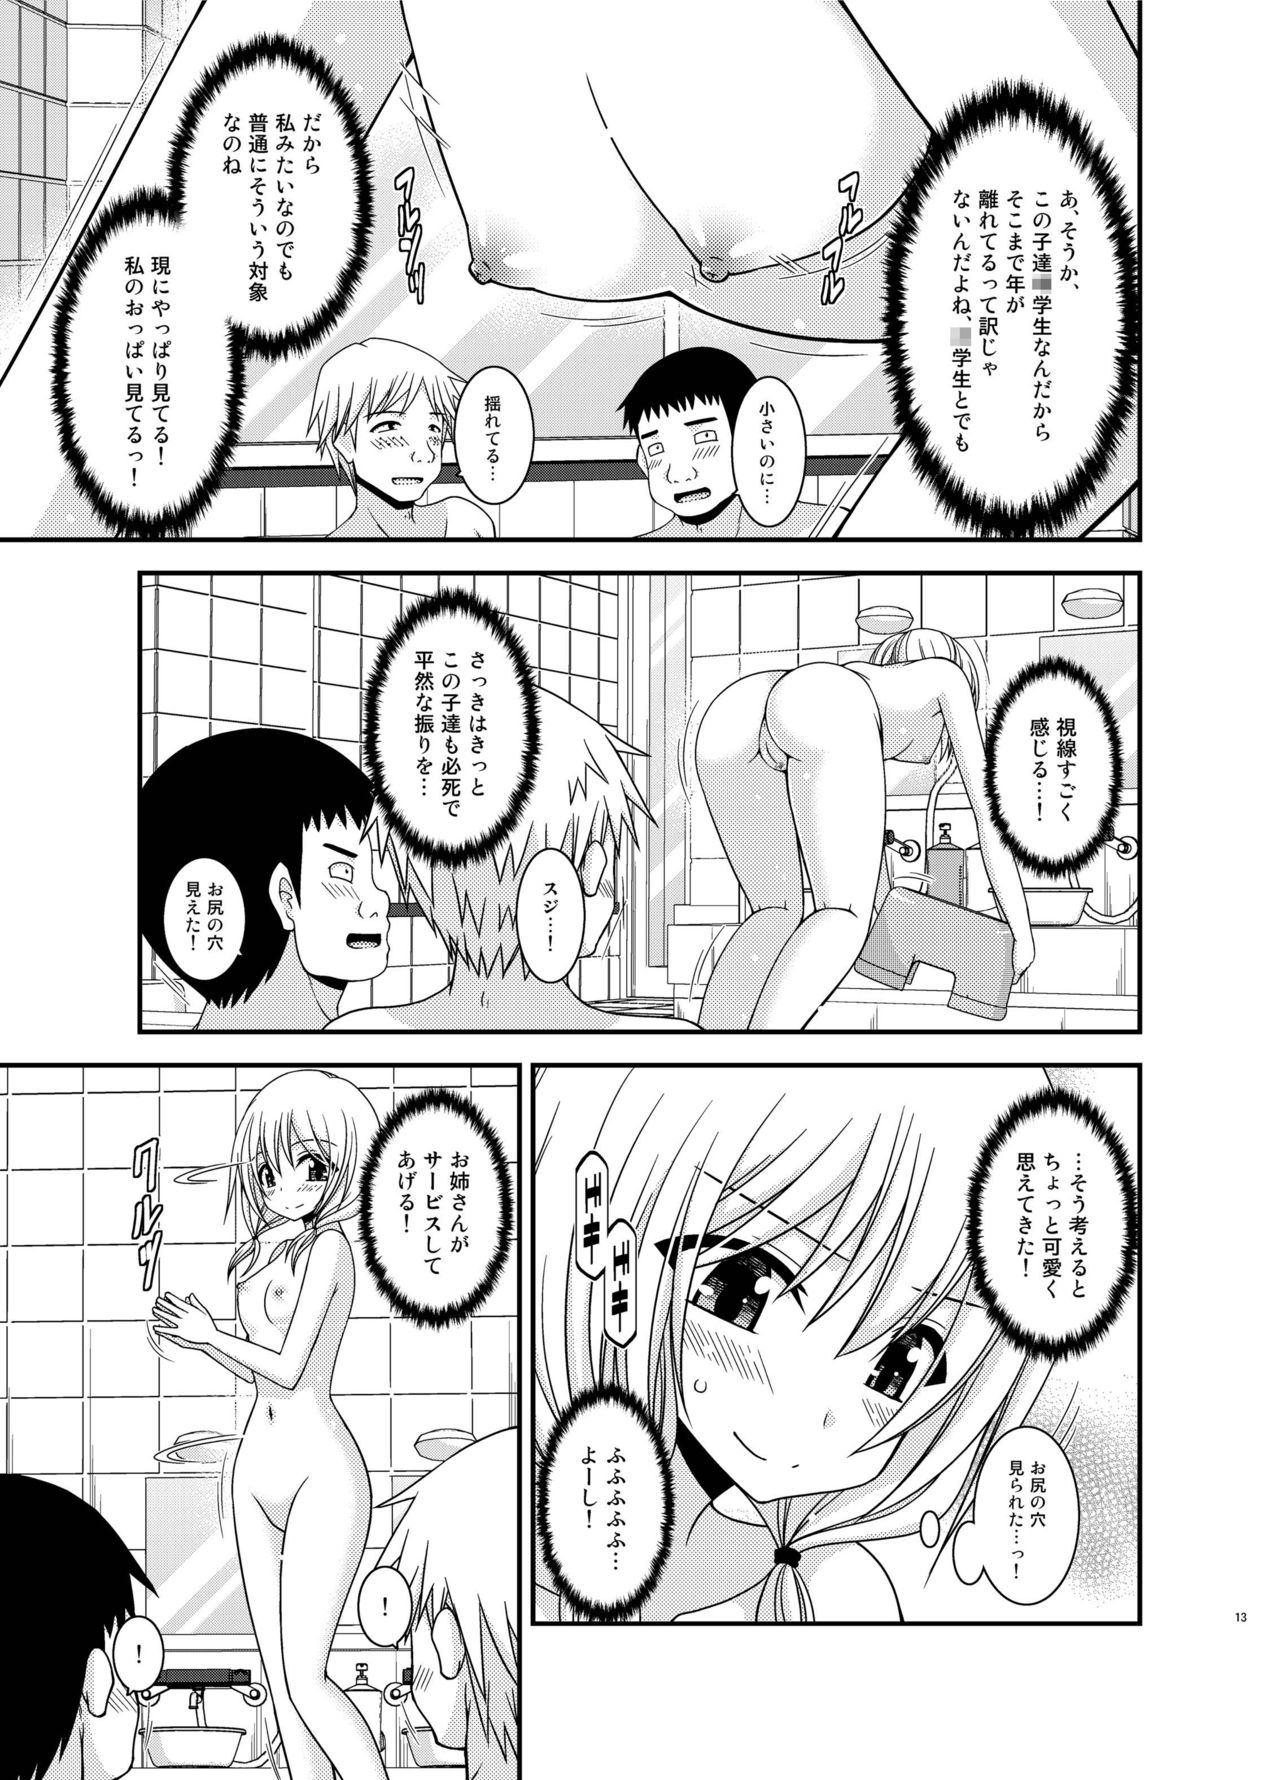 [valssu (Charu)] Roshutsu Shoujo Nikki 18 Satsume [Digital] page 13 full